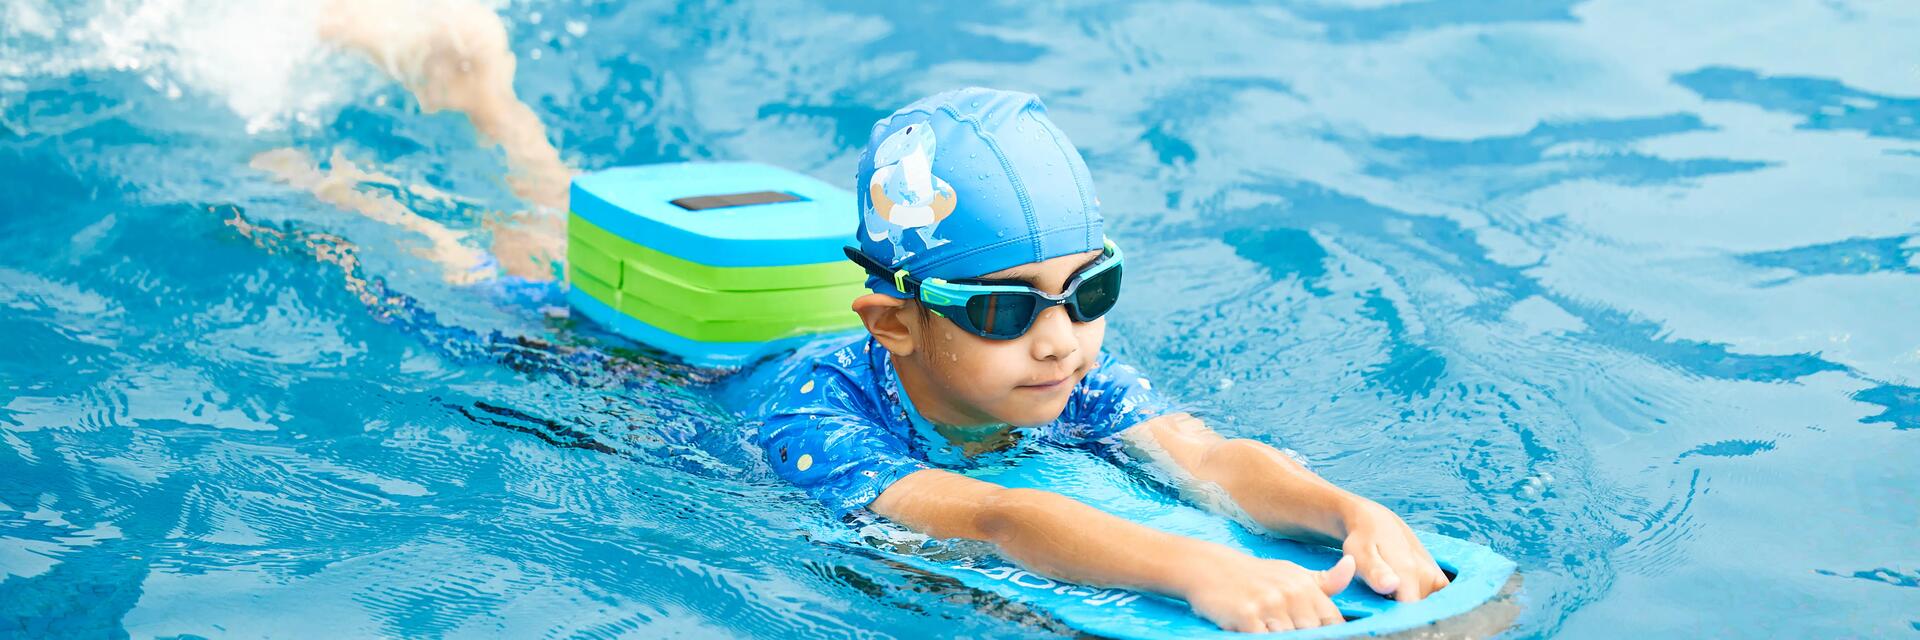 Dziecko uczące się pływać z deską ubrane w czepek i okulary do pływania